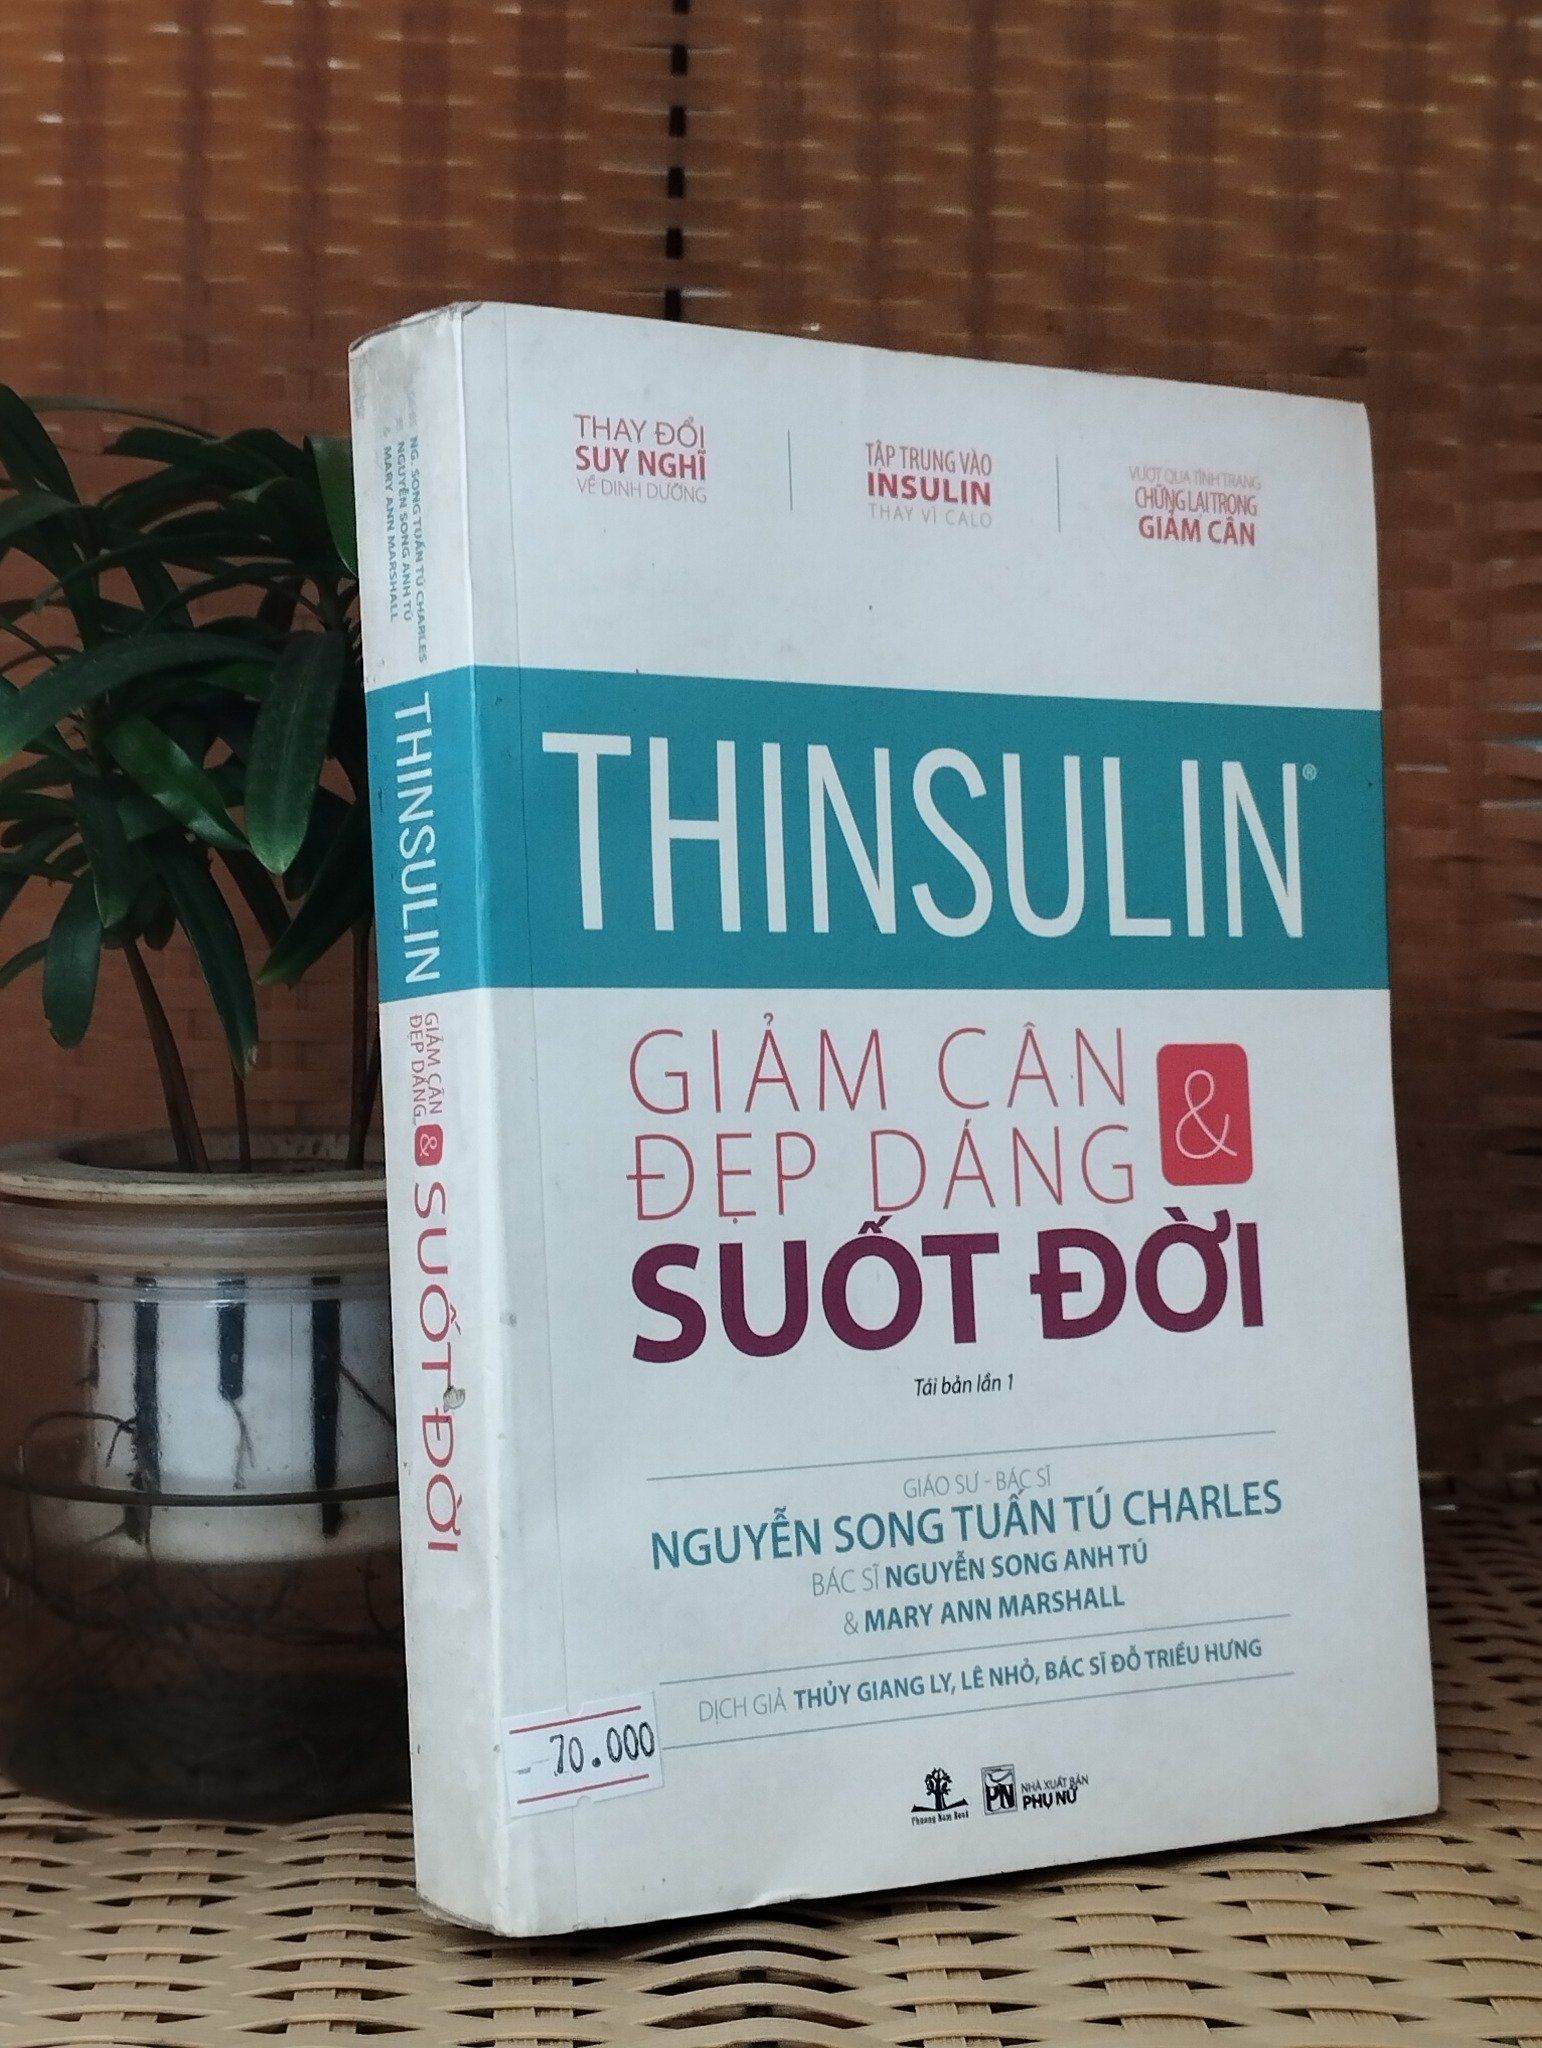  Thinsulin: Giảm cân & đẹp dáng suốt đời - Nhiều tác giả 